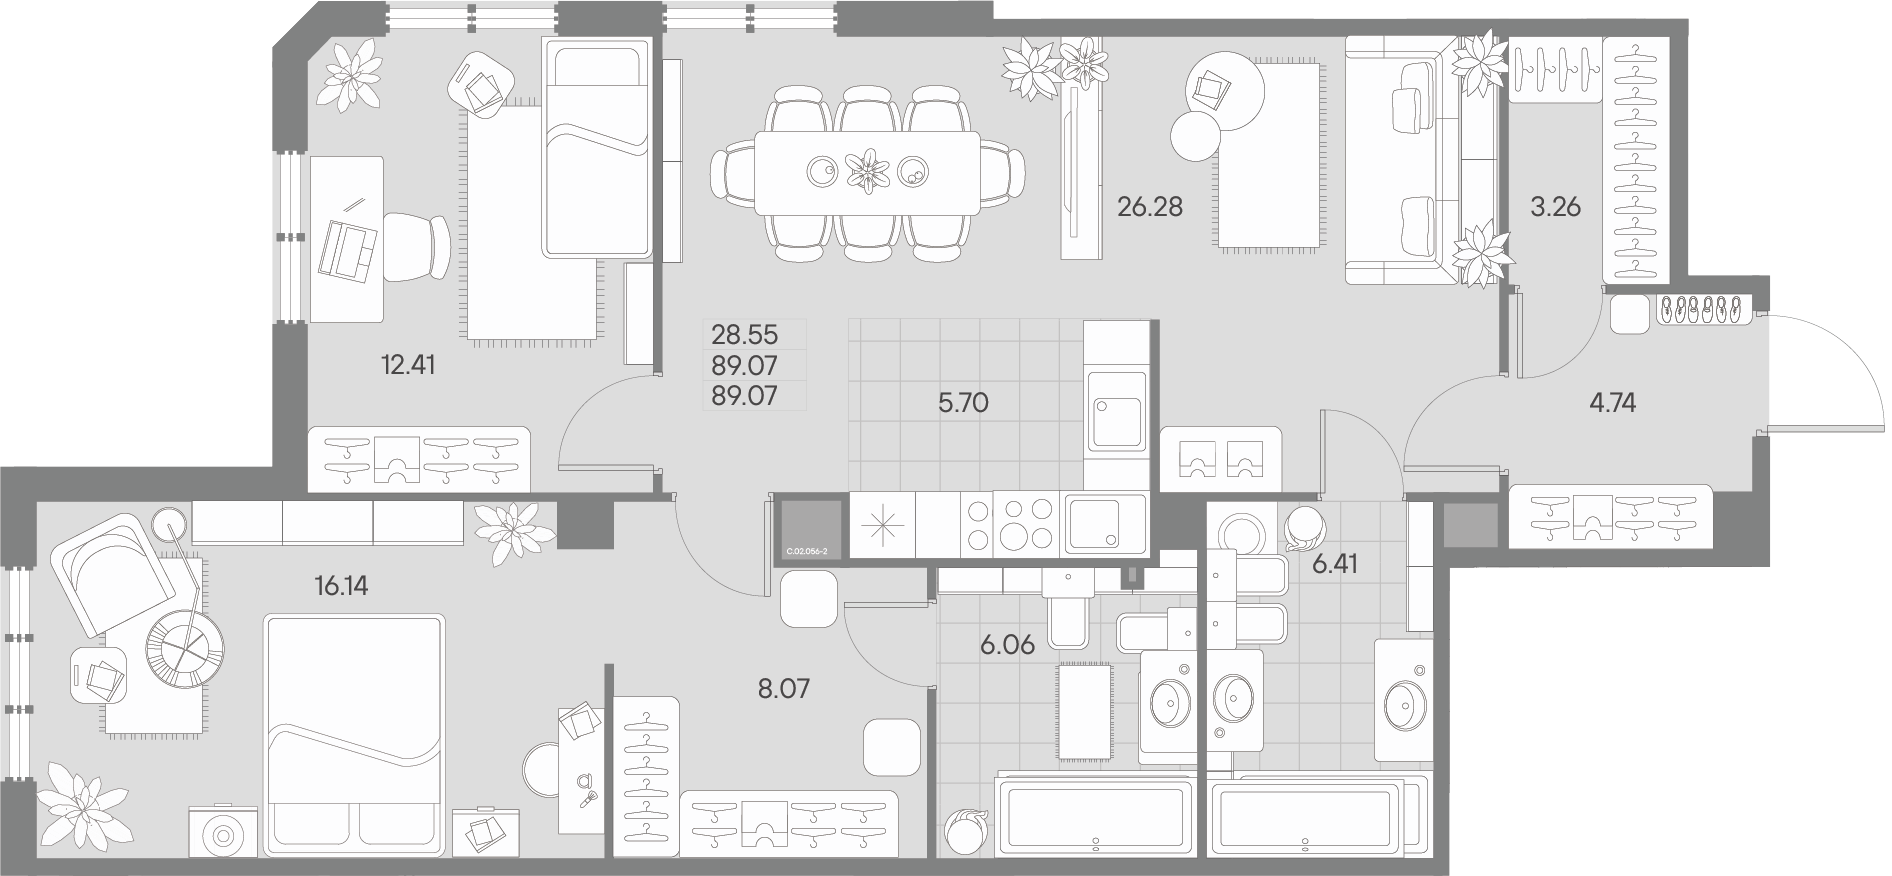 1-комнатная квартира  №56-2 в AMO: 89.07 м², этаж 2 - купить в Санкт-Петербурге